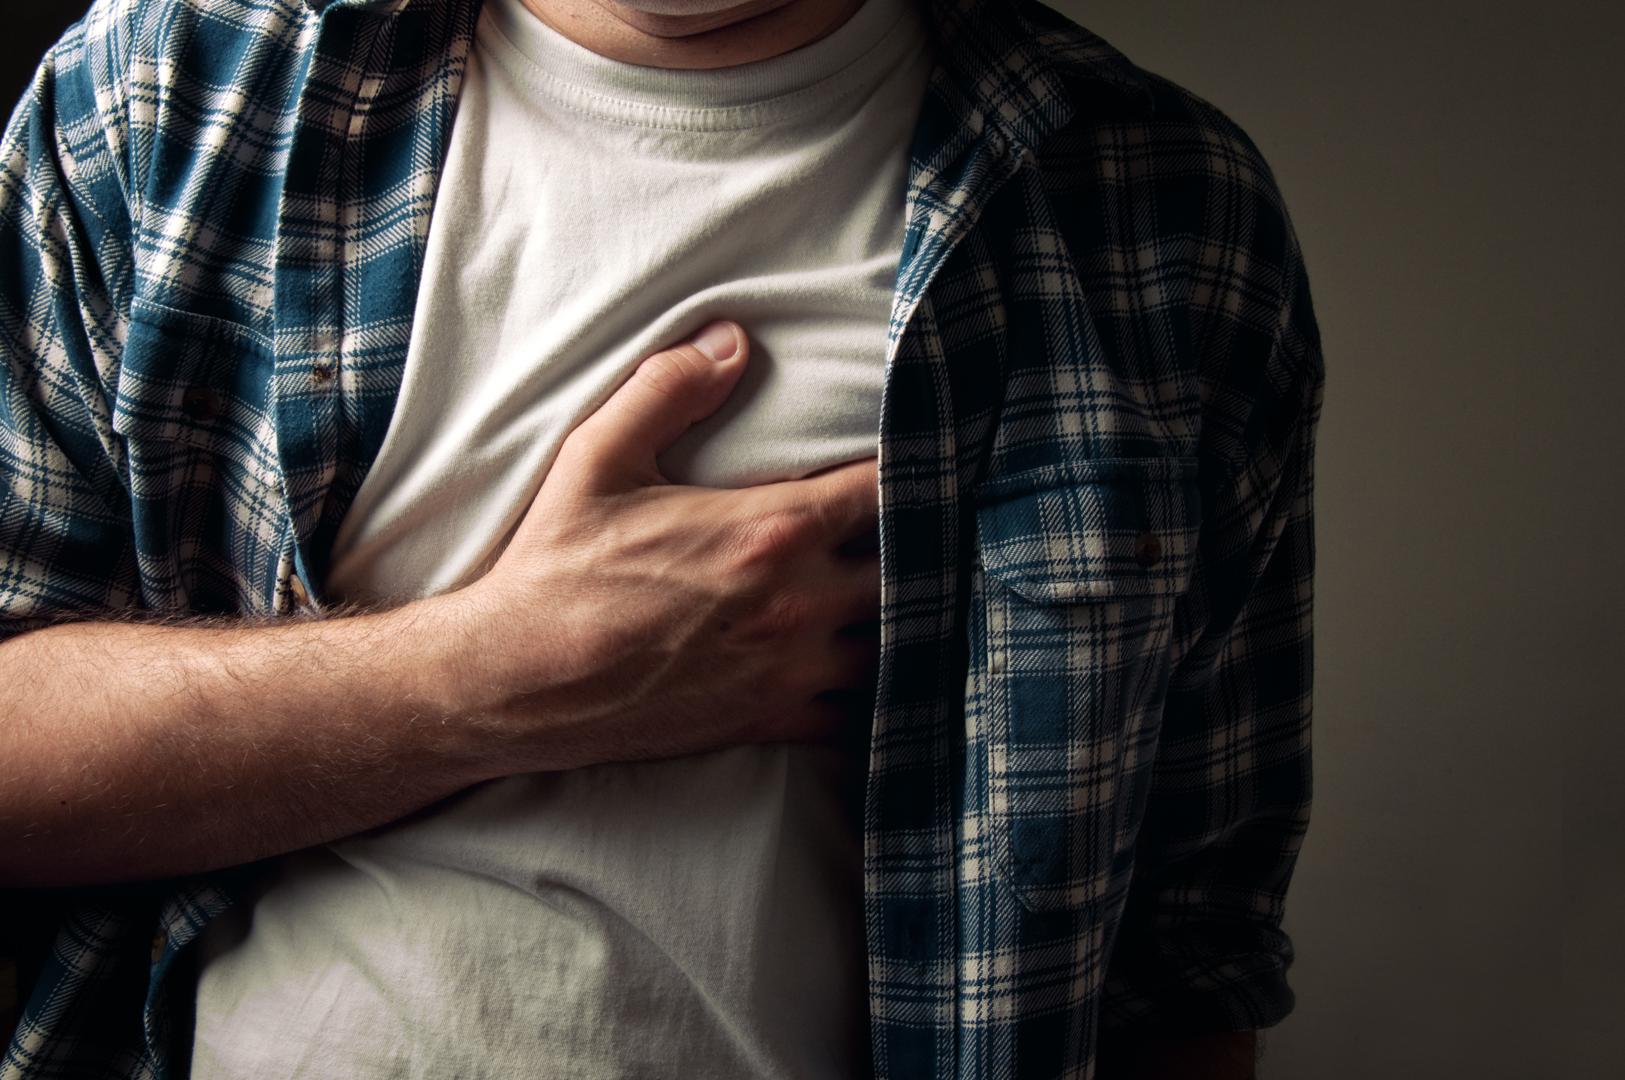 3. Bol u prsima - Svaka iznenadna bol u prsima trebala bi se shvatiti ozbiljno. Uzroci mogu biti brojni, a svakako potražite pomoć ako su bol i pritisak jaki i traju duže od 15 minuta, ako se bol širi u ruke, leđa ili vilicu te ako su popratni simptomi gubitak daha, nesvjestica, znojenje i iskašljavanje krvi.  